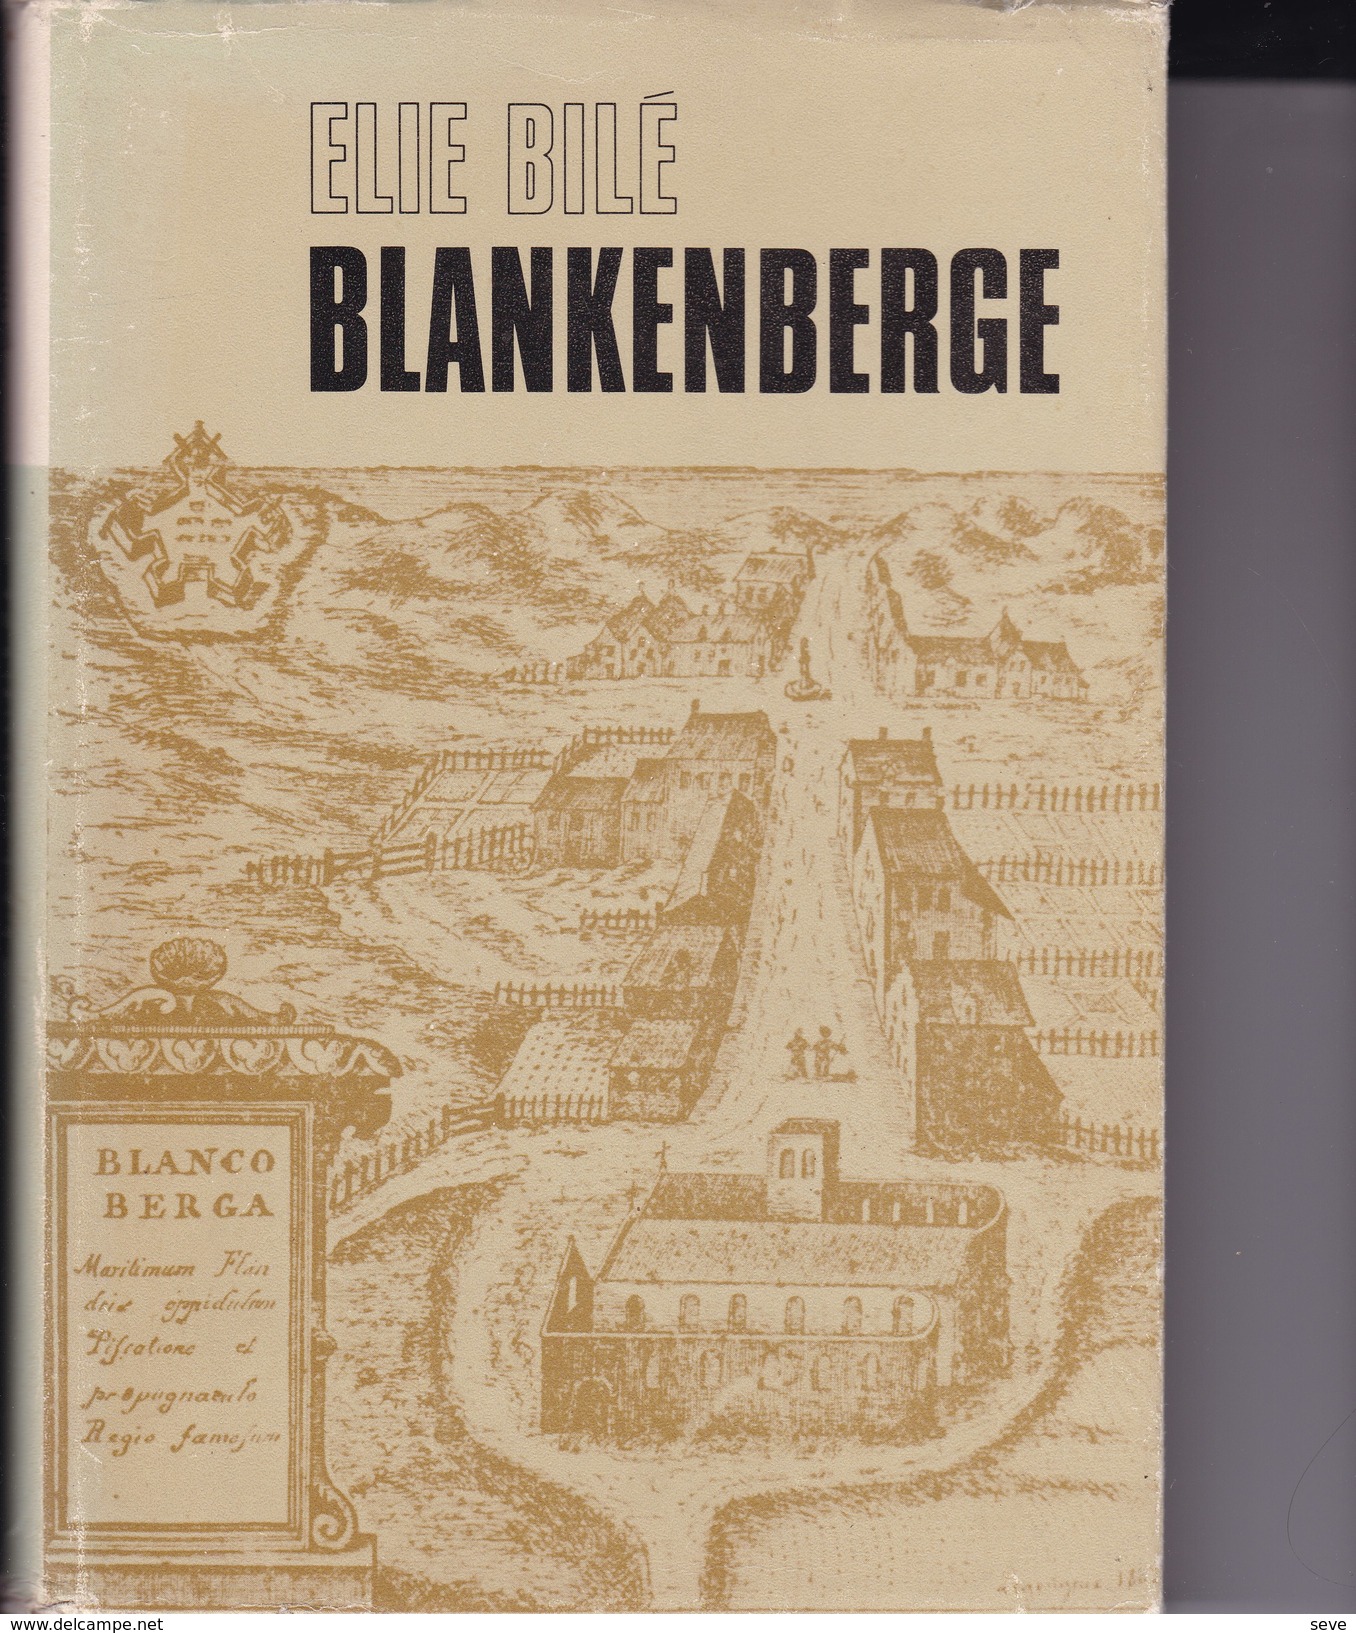 BLANKENBERGE Par BILE, Elie, 1971, 320 Pages Histoire Geschiedenis - Histoire